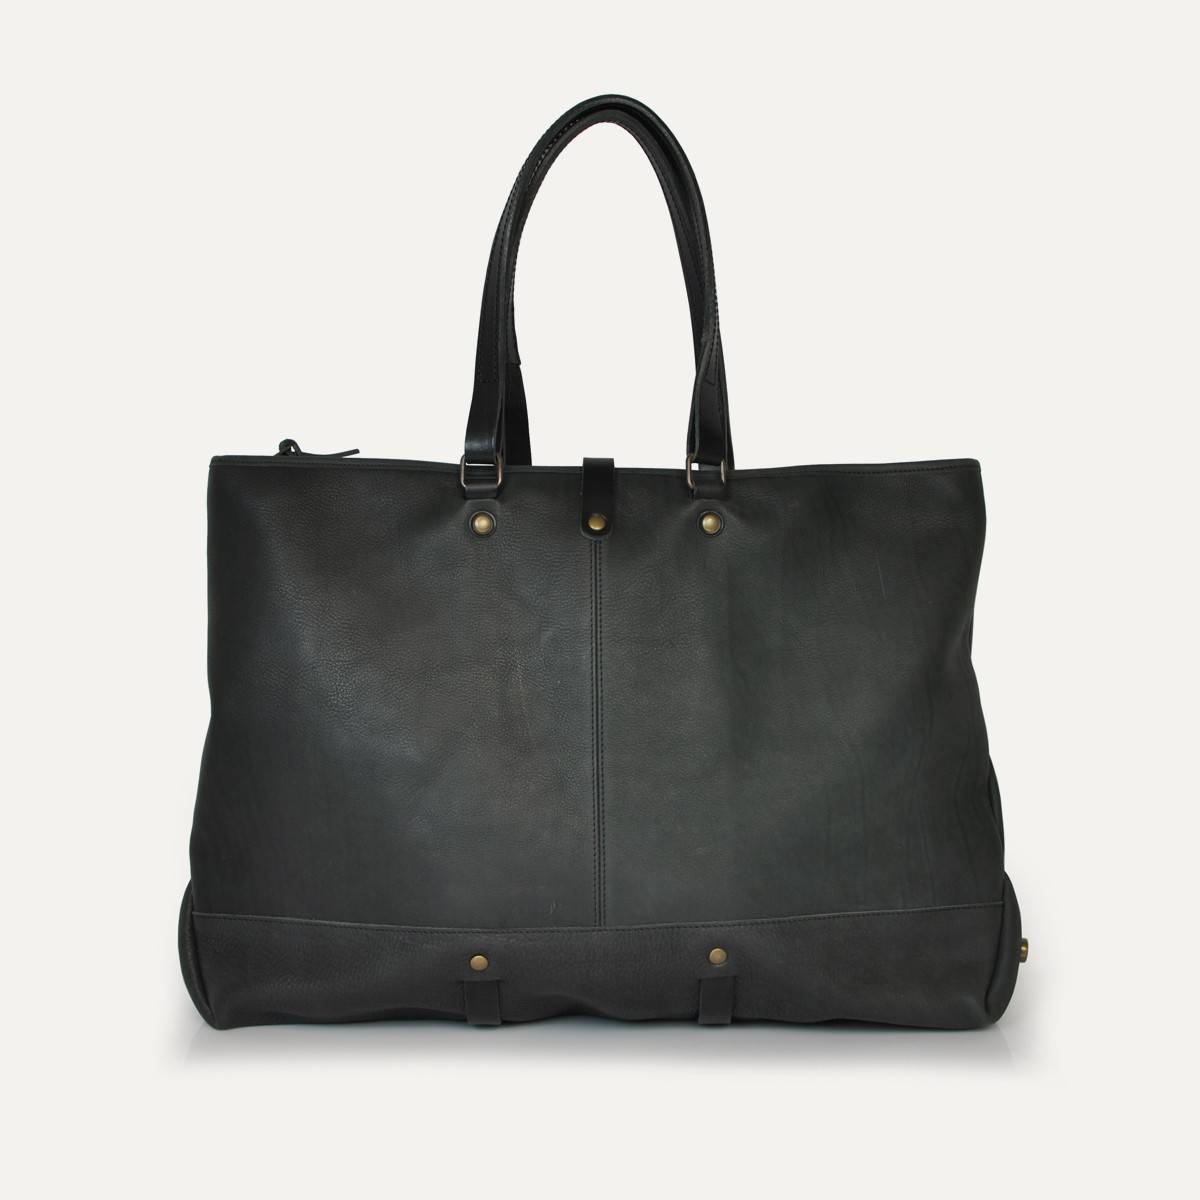 Garance shopping bag - Black (image n°1)